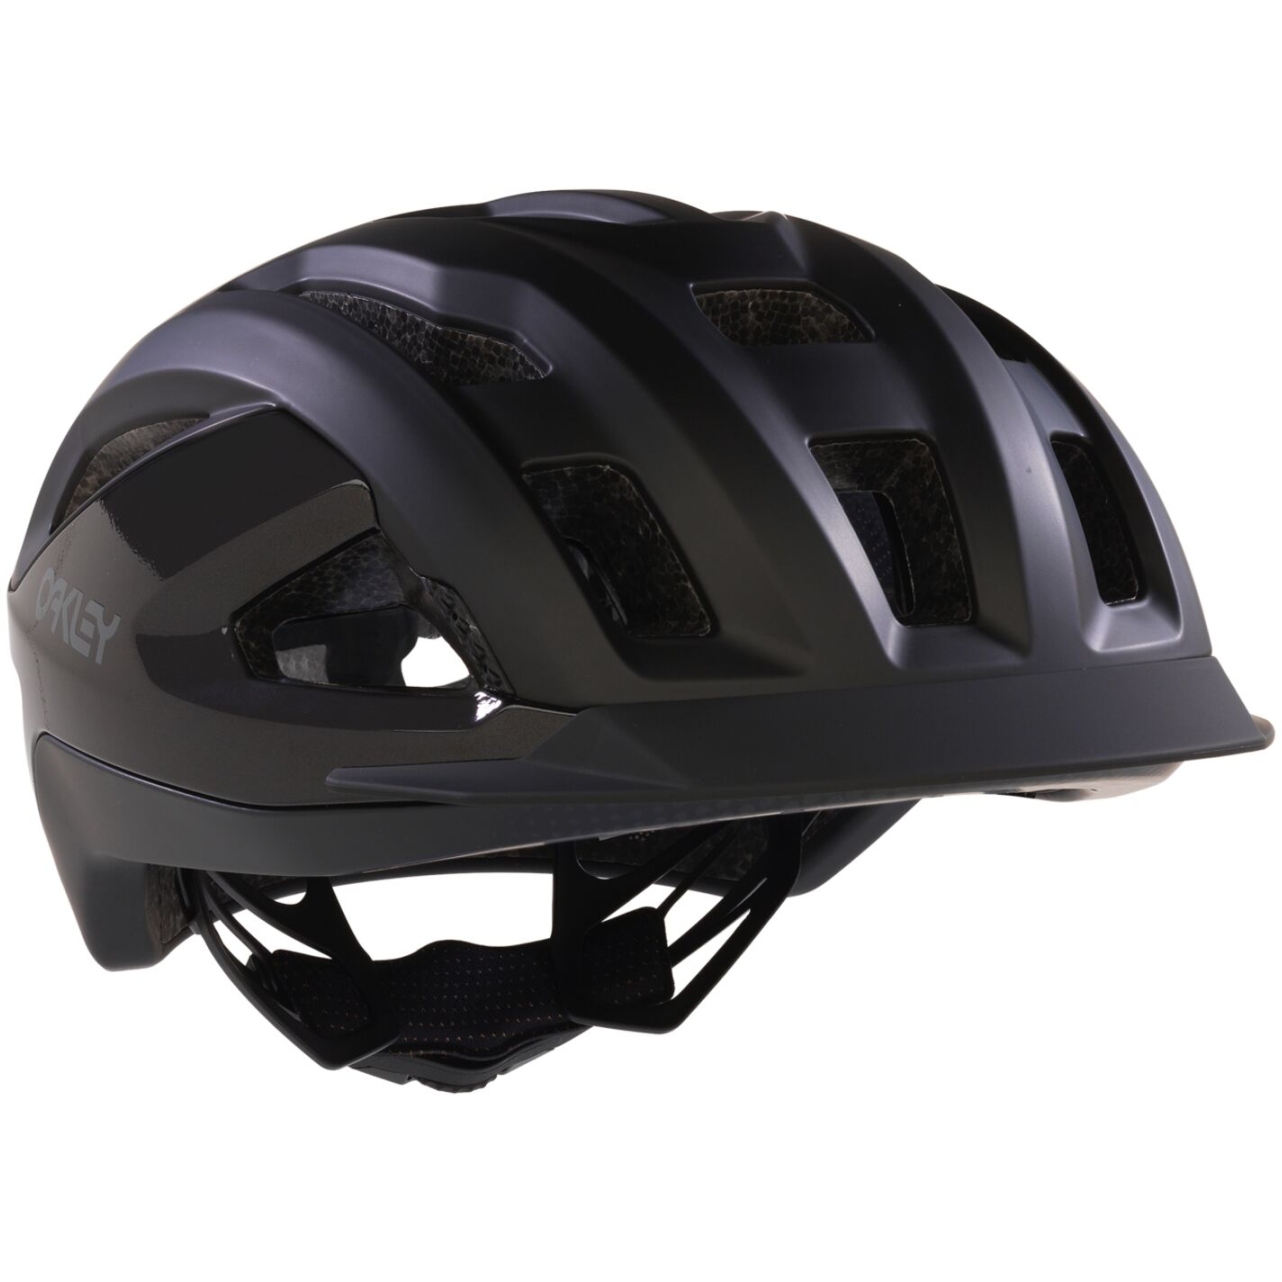 Picture of Oakley ARO3 All Road ICE EU Helmet - I.C.E Black Reflective